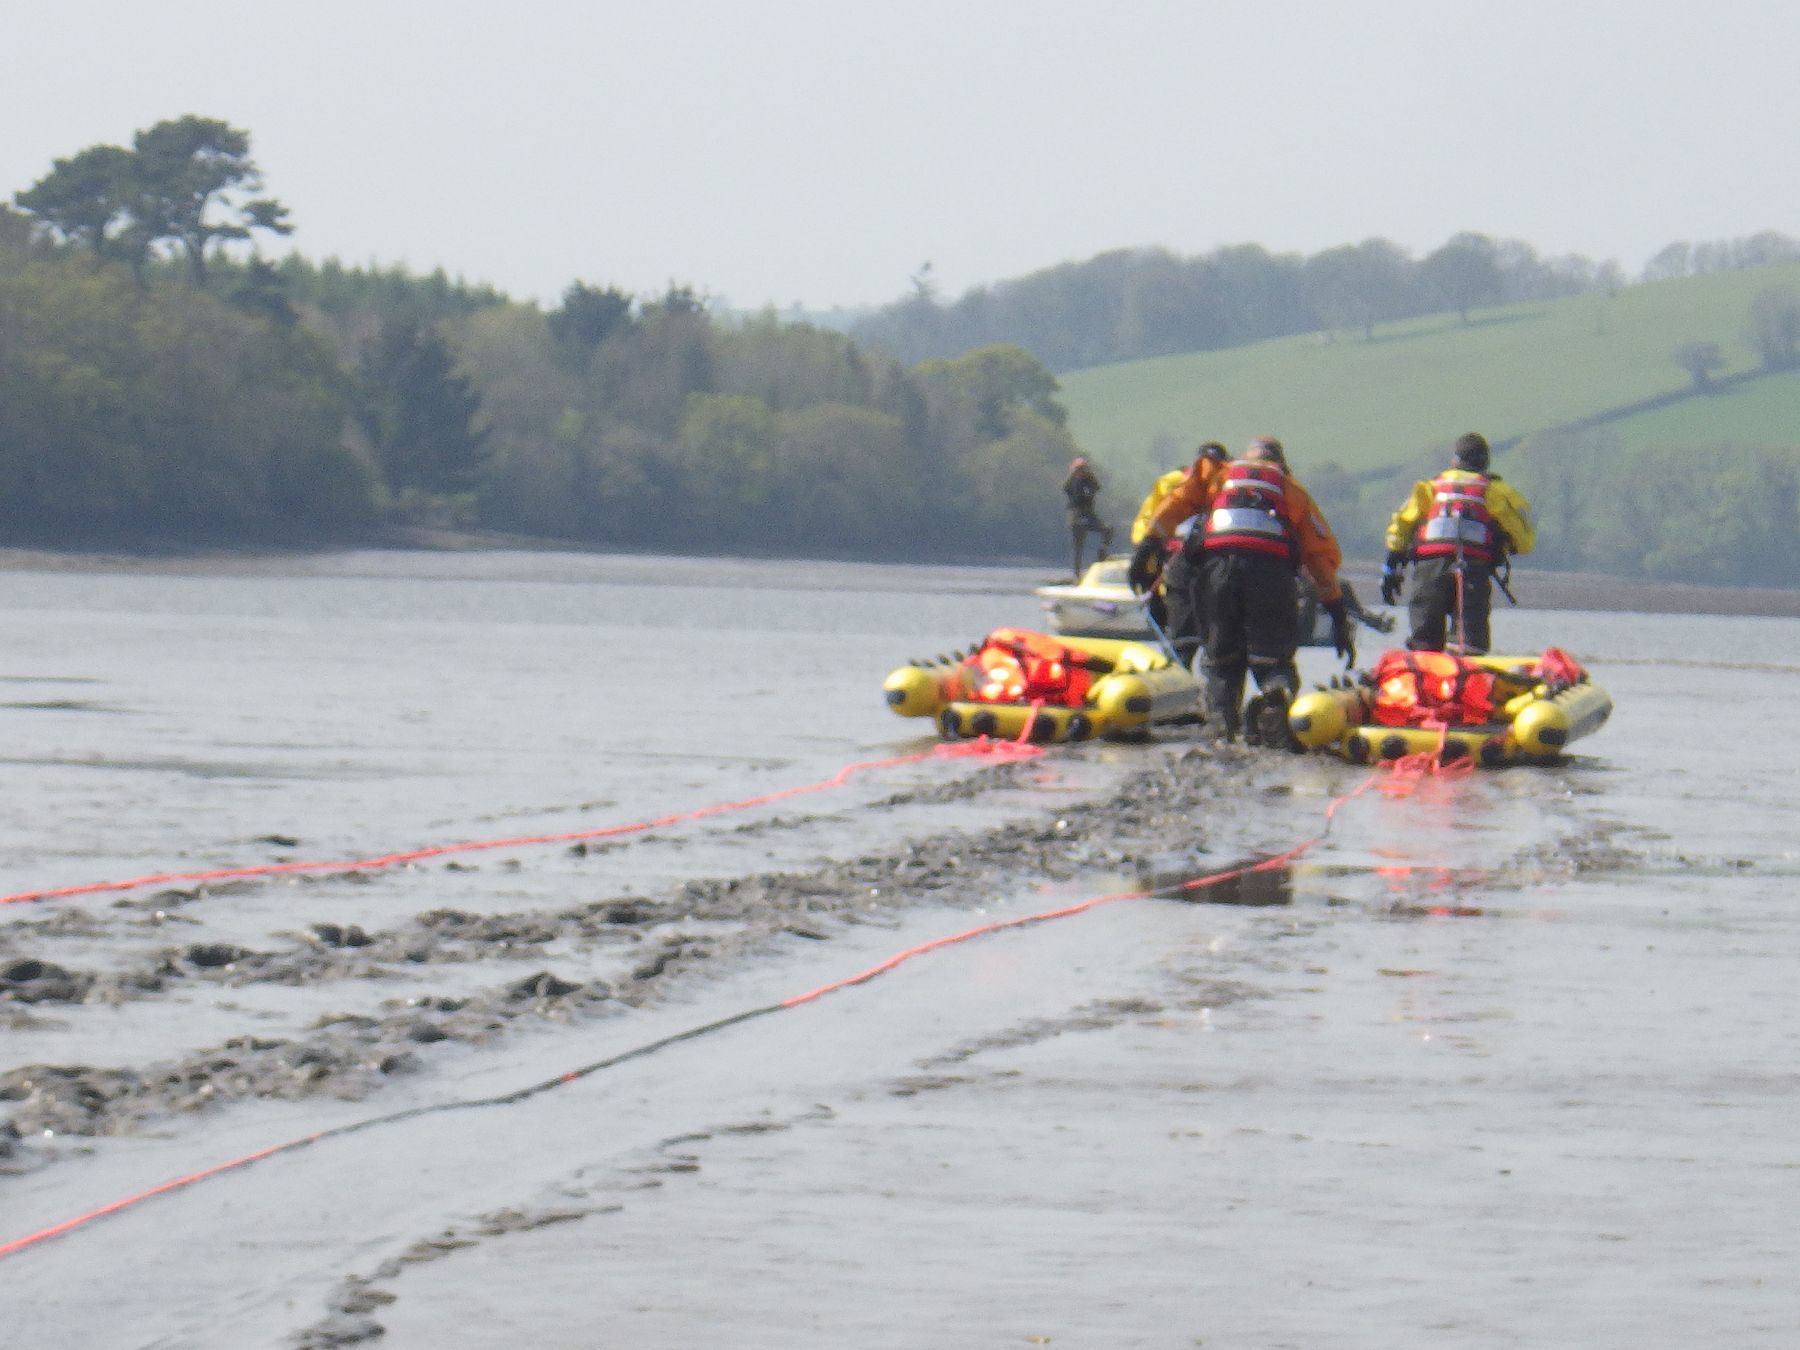 Coastguard technicians take rescue rafts to the vessel